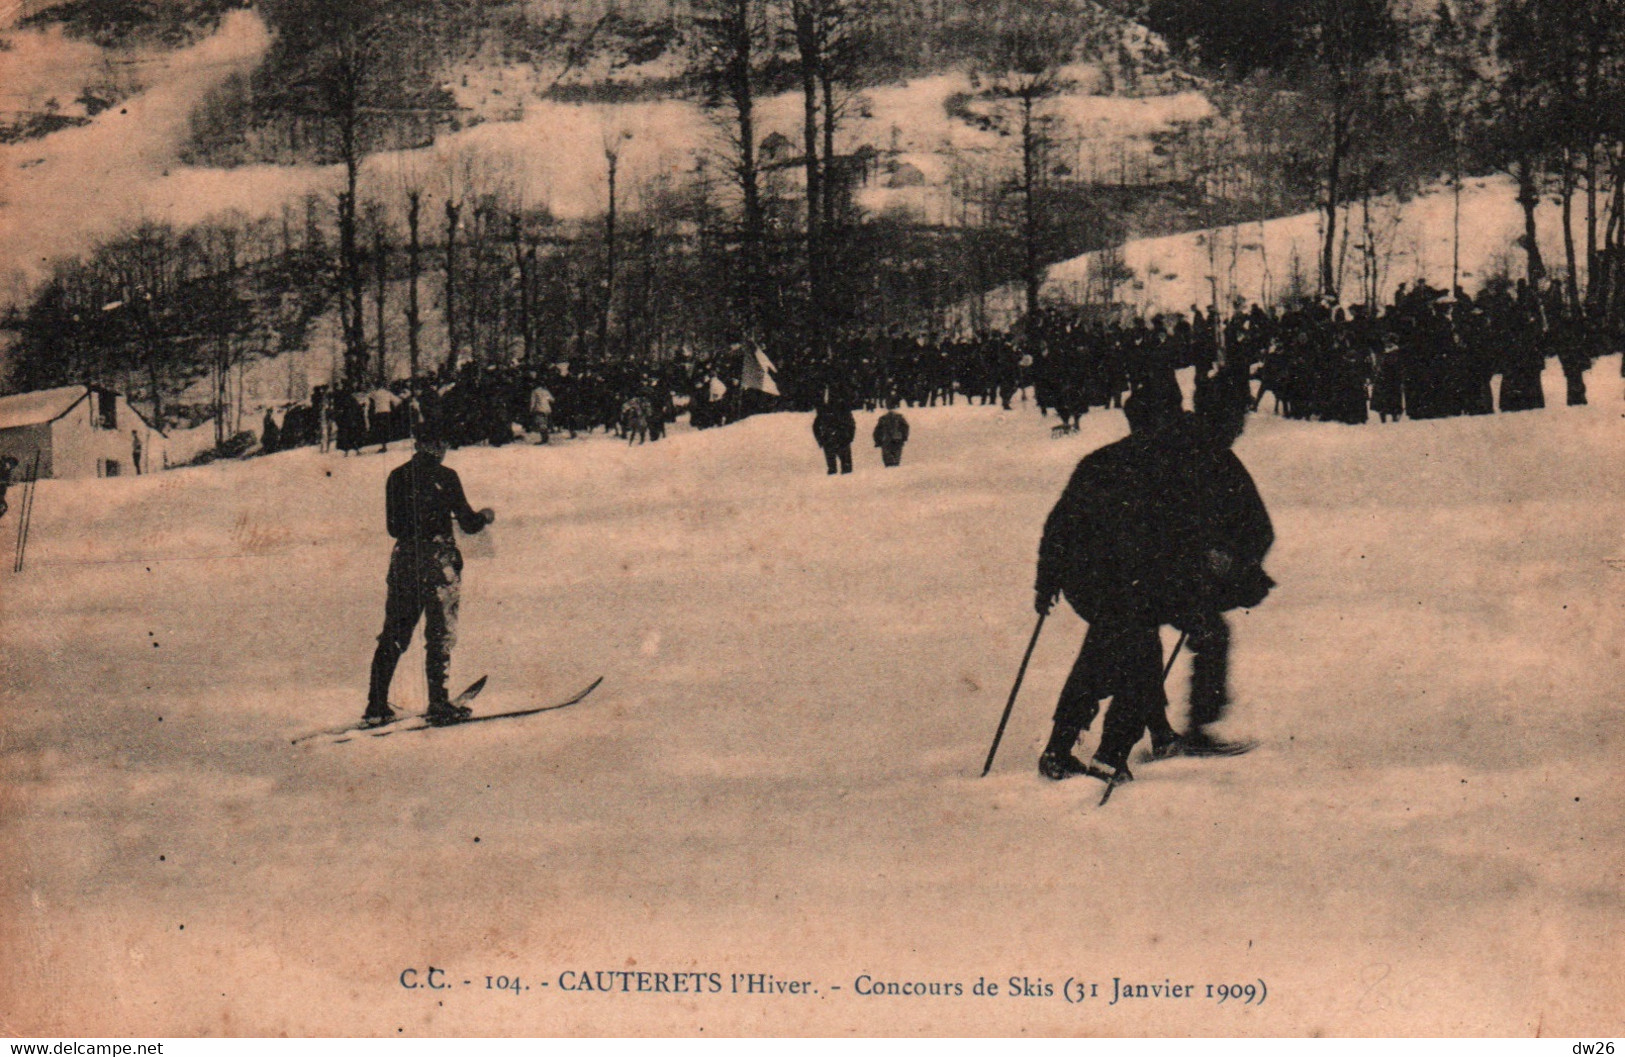 Sports D'Hiver, Ski - Cauterets L'hiver - Concours De Skis Le 31 Janvier 1909 - Carte C.C. N° 104 Non Circulée - Wintersport